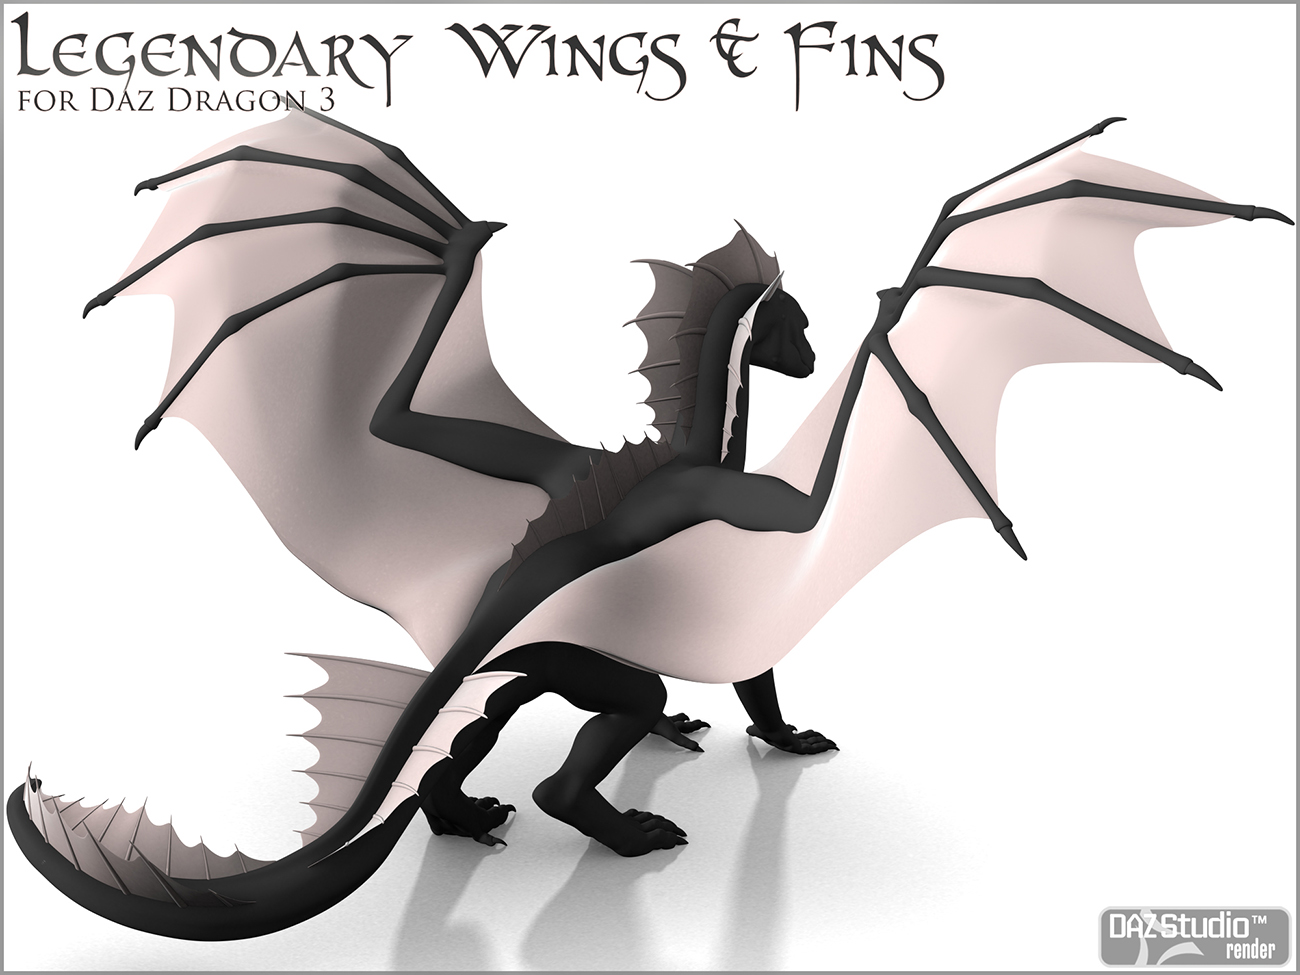 Legendary Wings & Fins HD for DAZ Dragon 3 by: DarioFish, 3D Models by Daz 3D